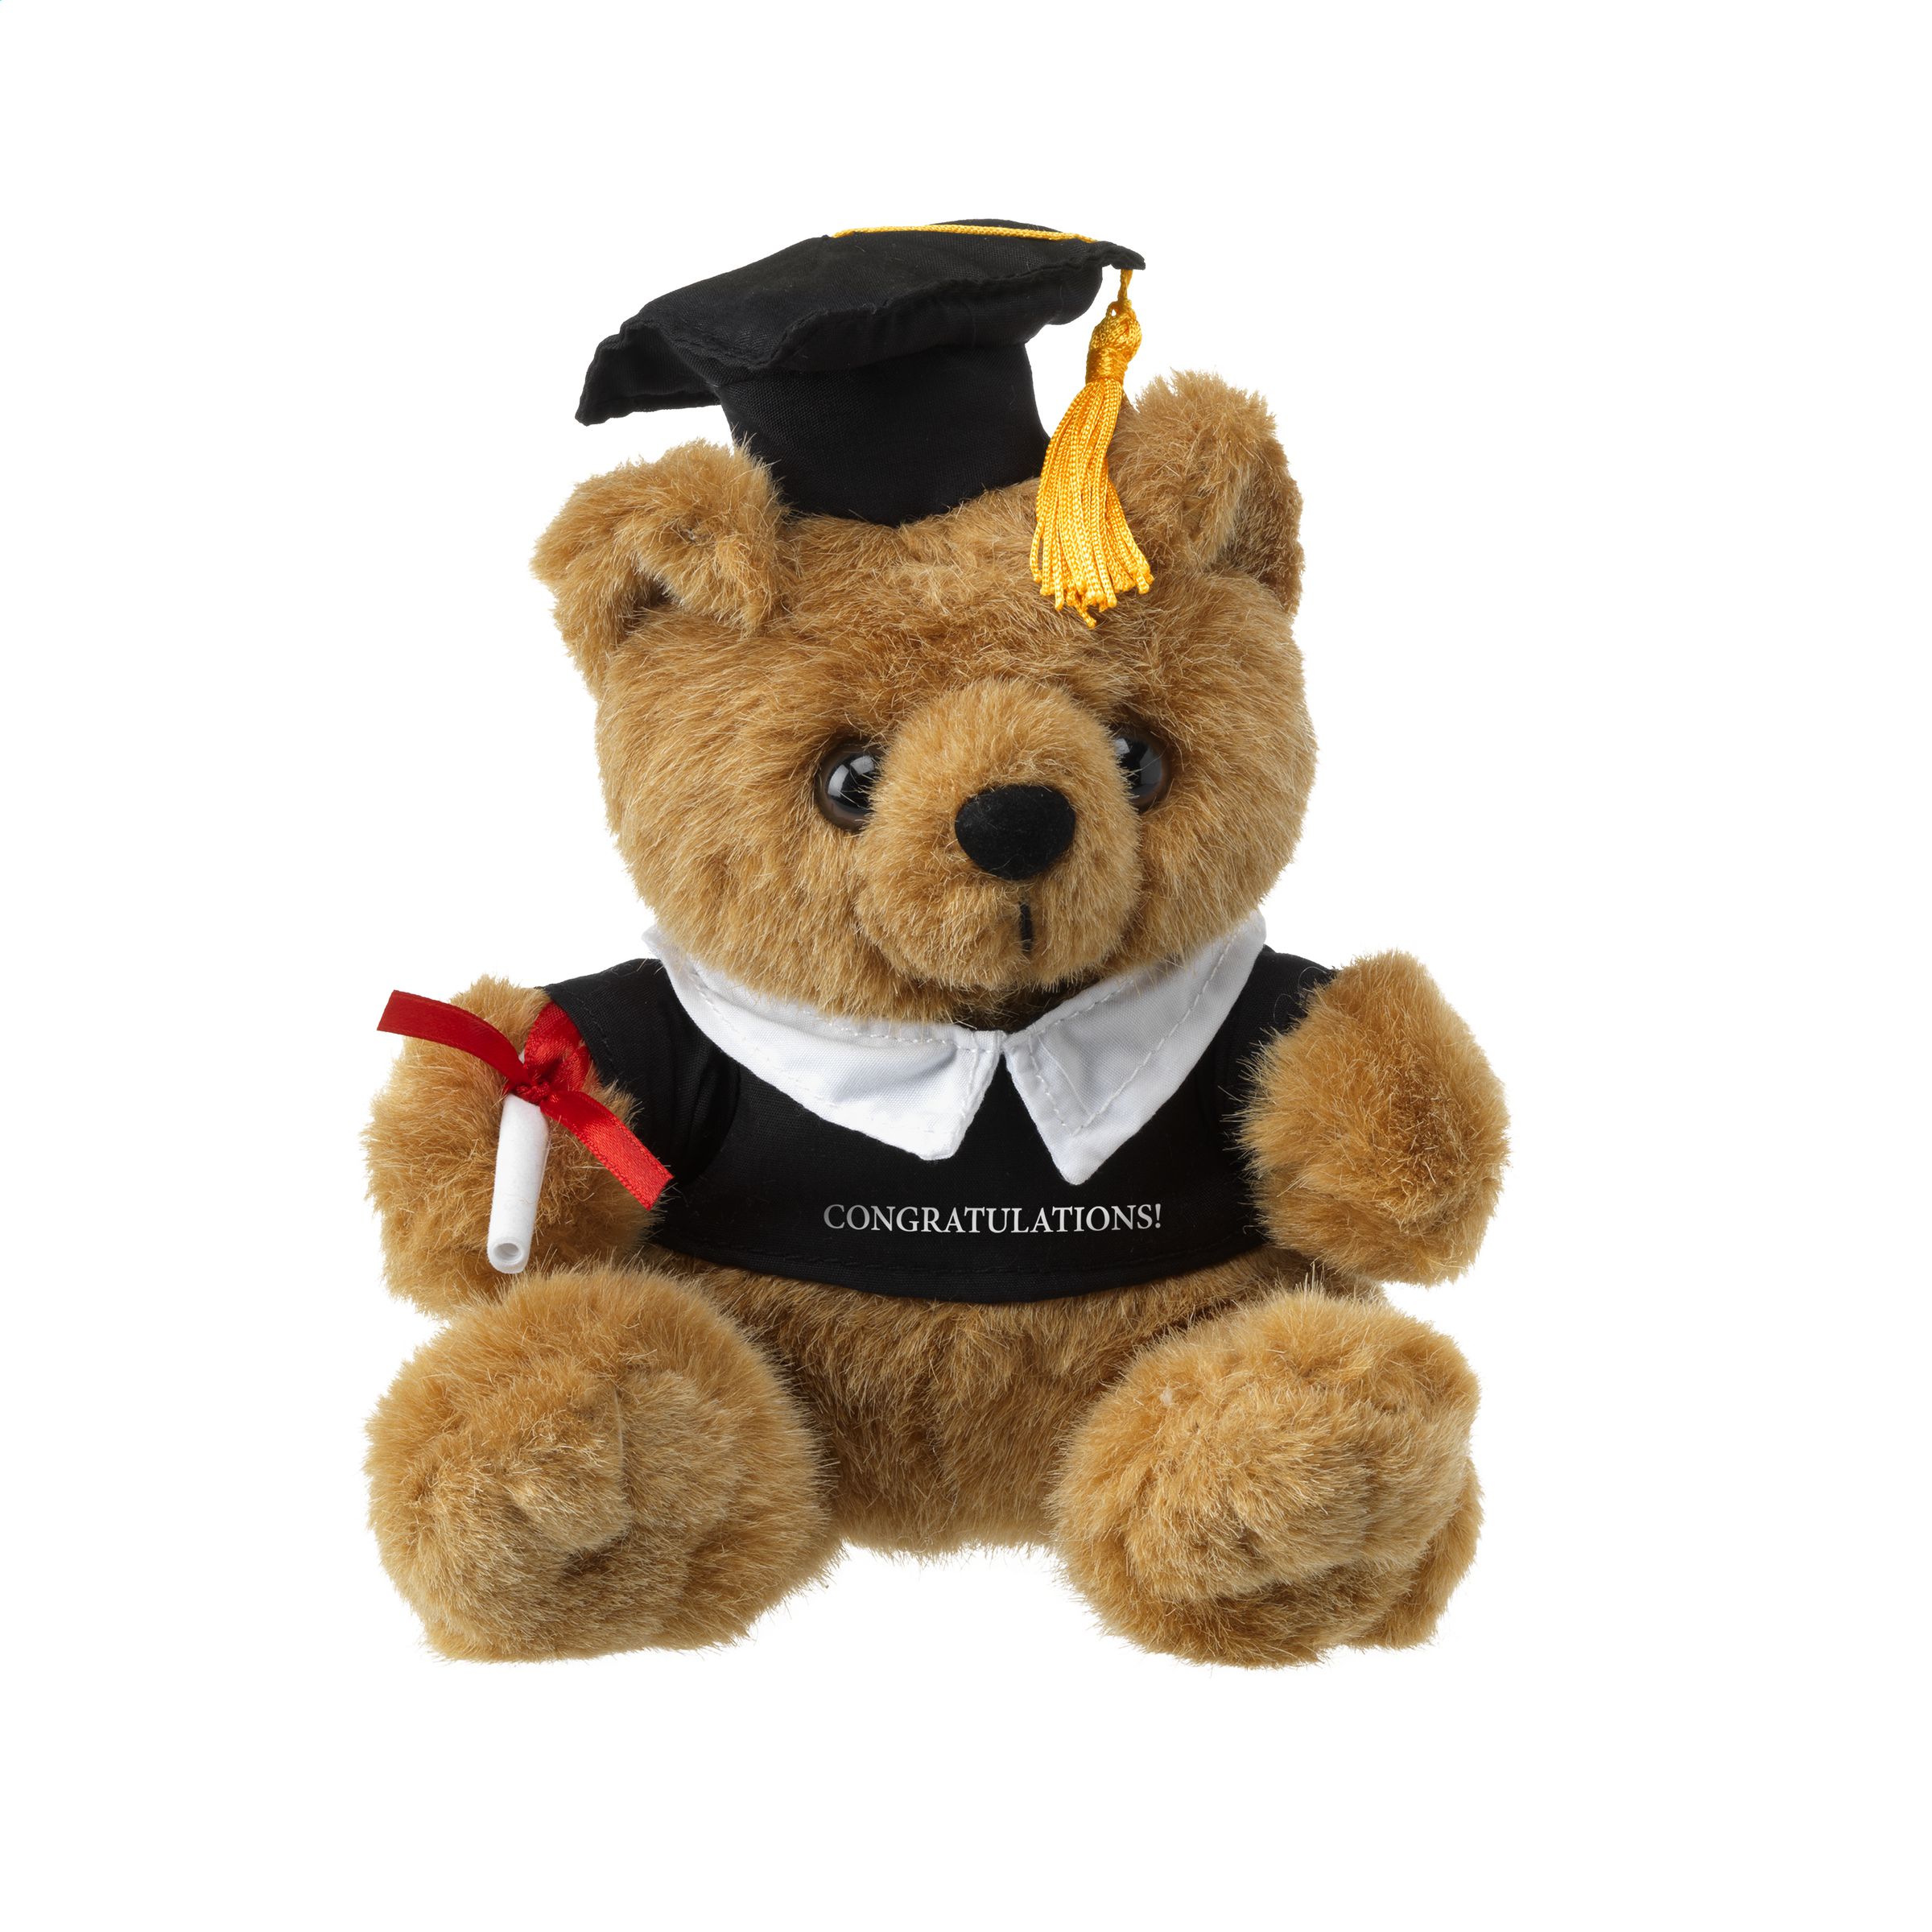 Graduation Teddy Bear - Castle Donington